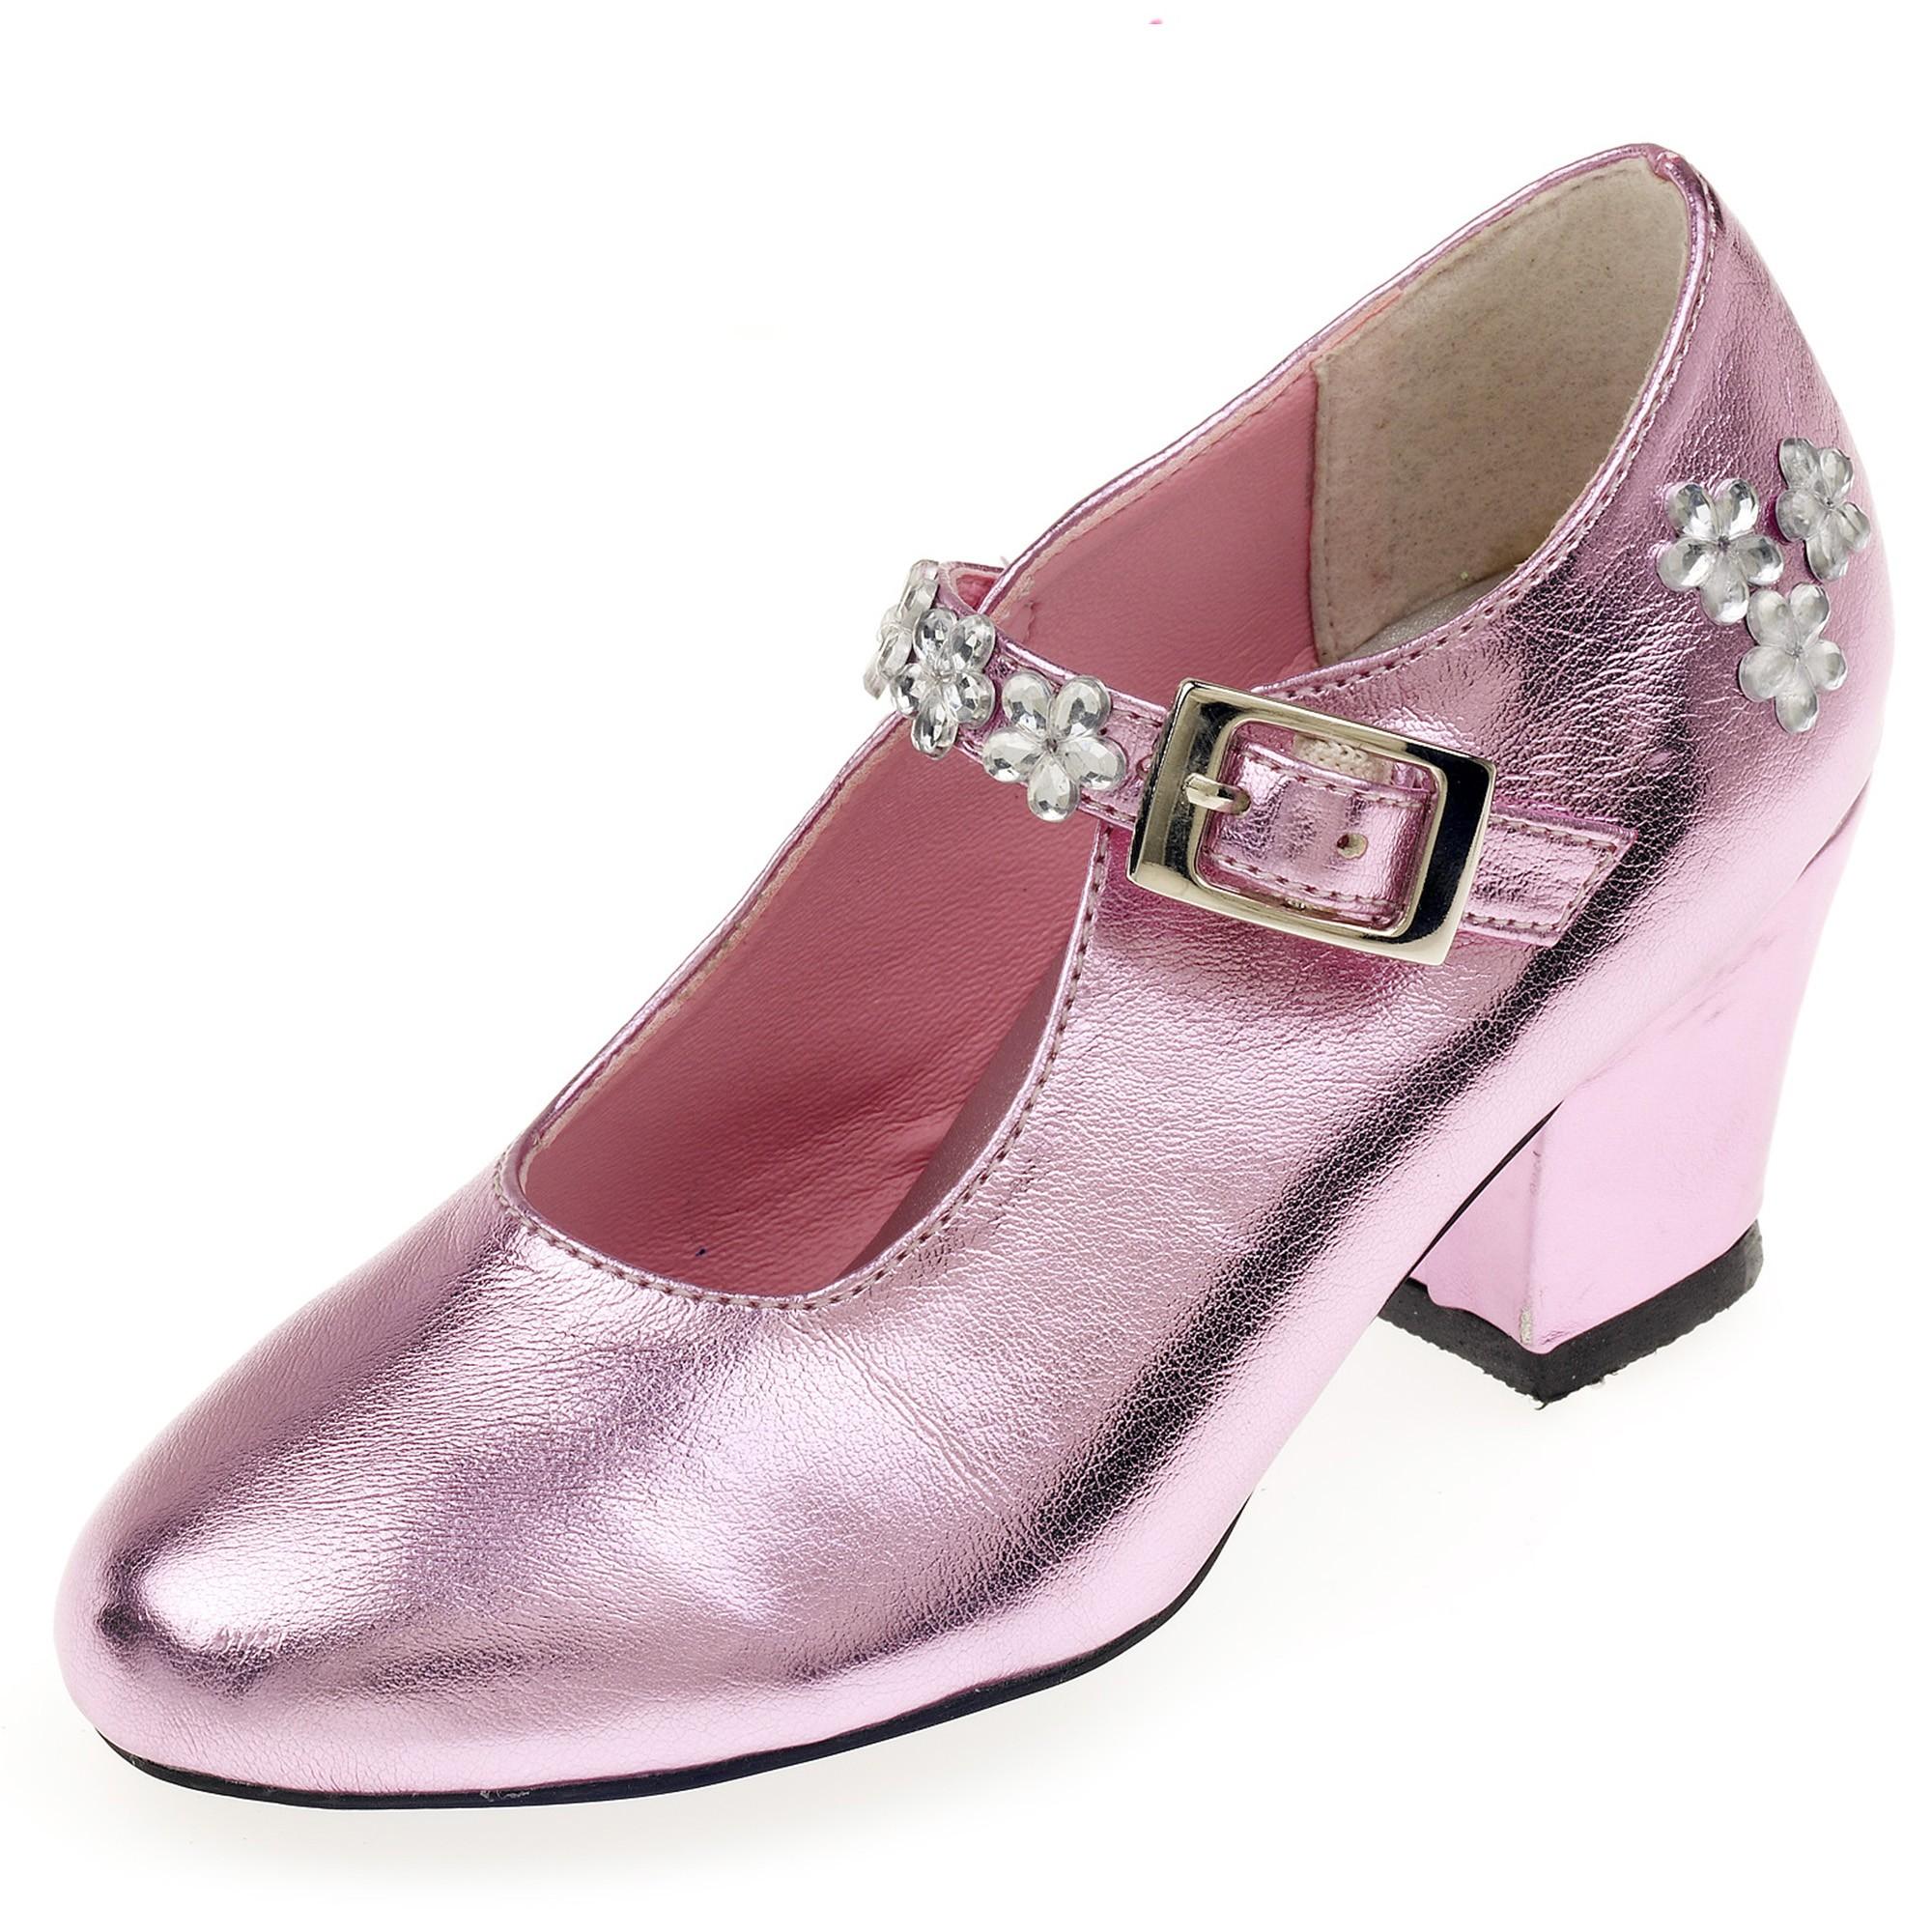 Souza - Schoentjes hoge hak Madeleine, roze metallic, mt 29 (1 paar)